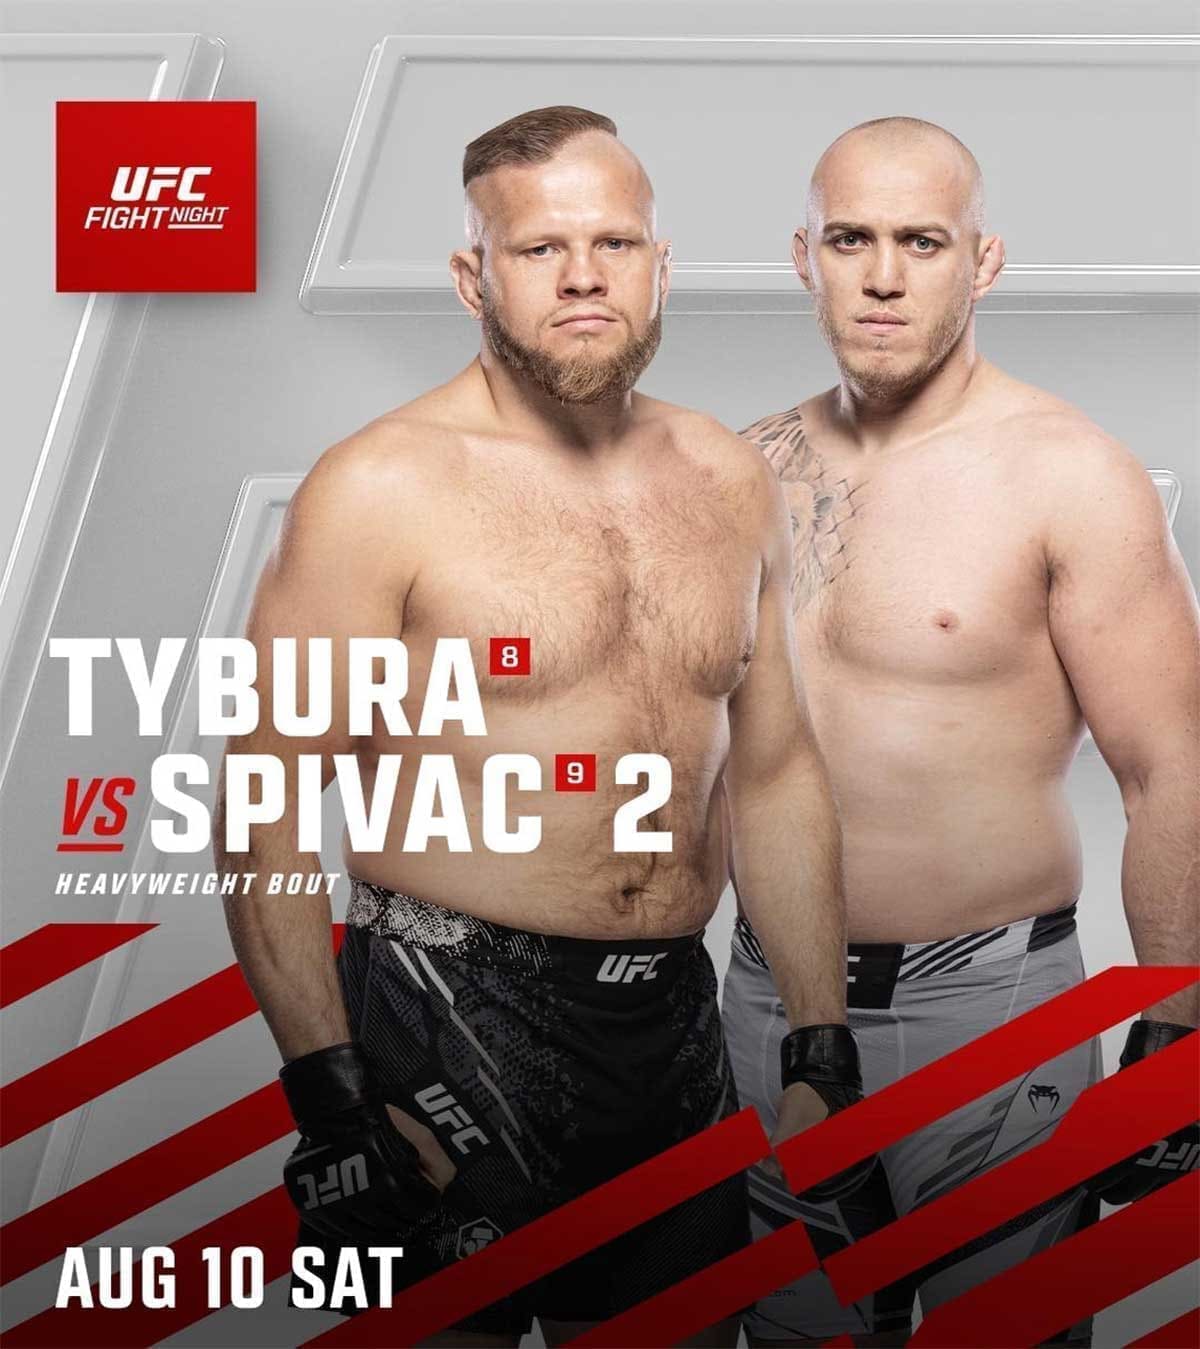 UFC on ESPN 61: Тыбура - Спивак 2 дата проведения, кард, участники и результаты